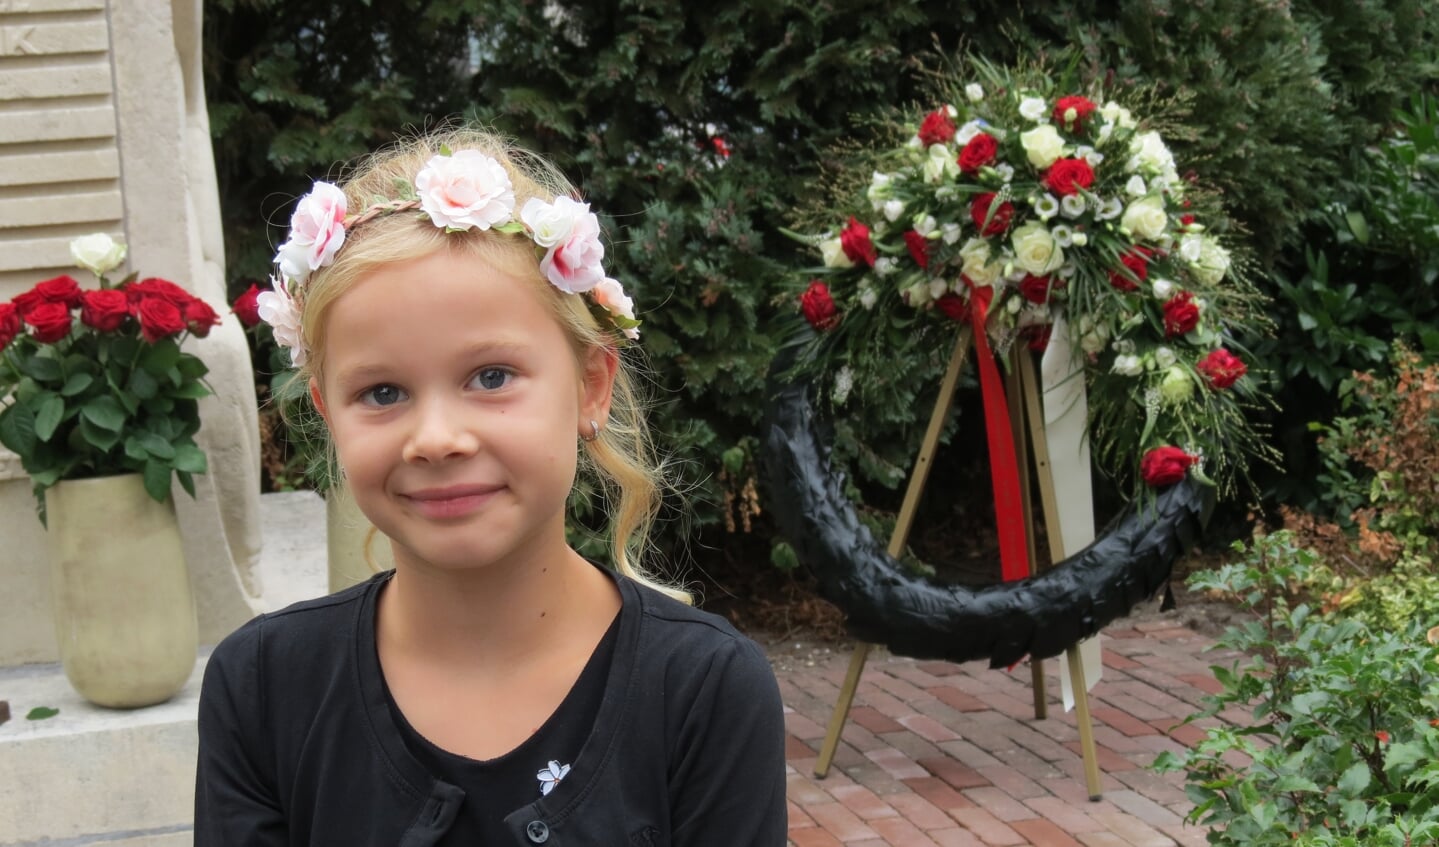 De zevenjarige Lisa Meijer van de vierde generatie plaatste tussen de rode rozen een witte roos. 